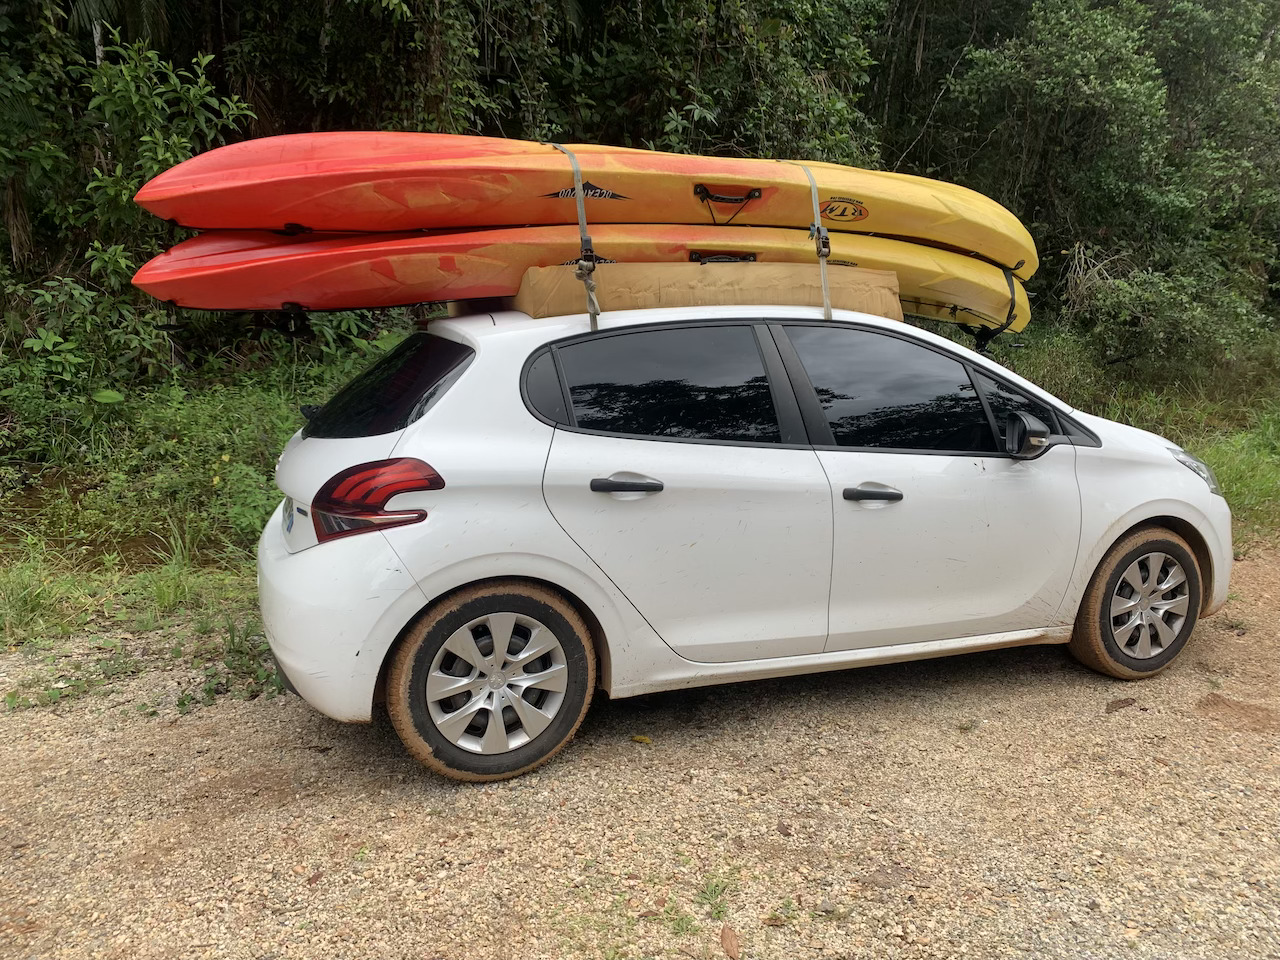 Kayak_sur_voiture_2